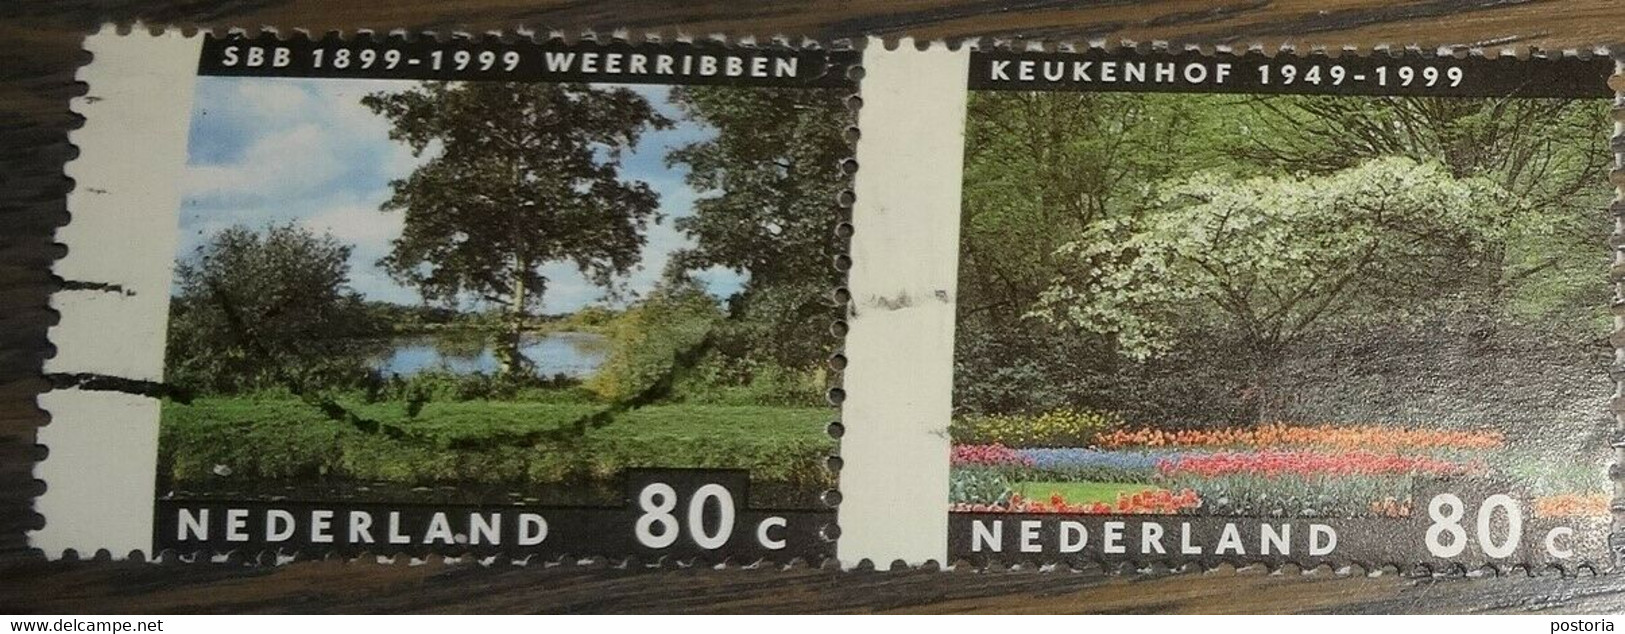 Nederland - NVPH - 1816 T/m 1817 Paar - 1999 - Gebruikt - Cancelled - Jaargetijden Weerribben - Keukenhof - Oblitérés